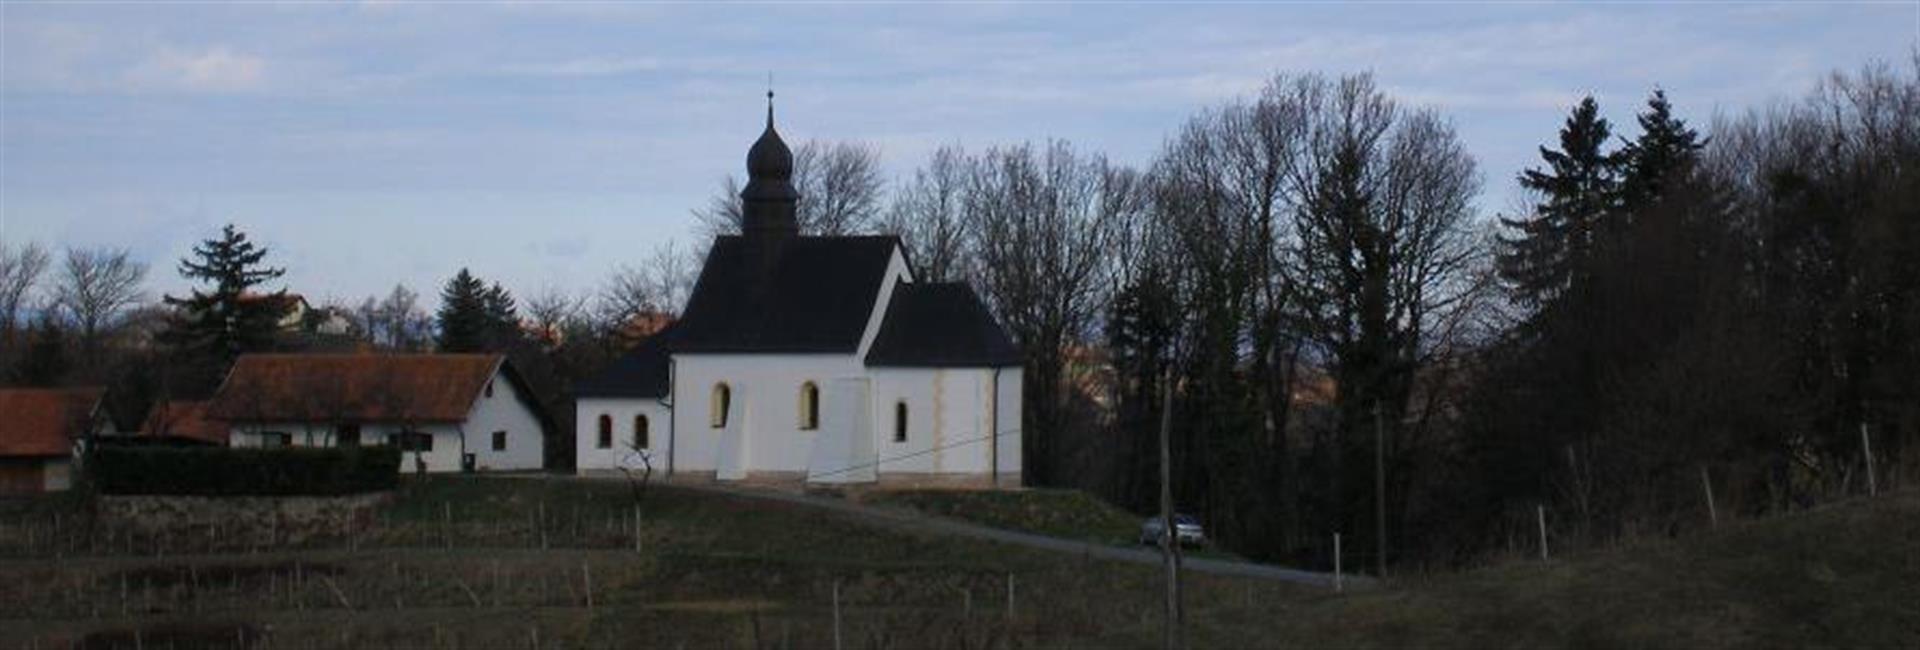 Cerkev sv. Elizabete Pohorje